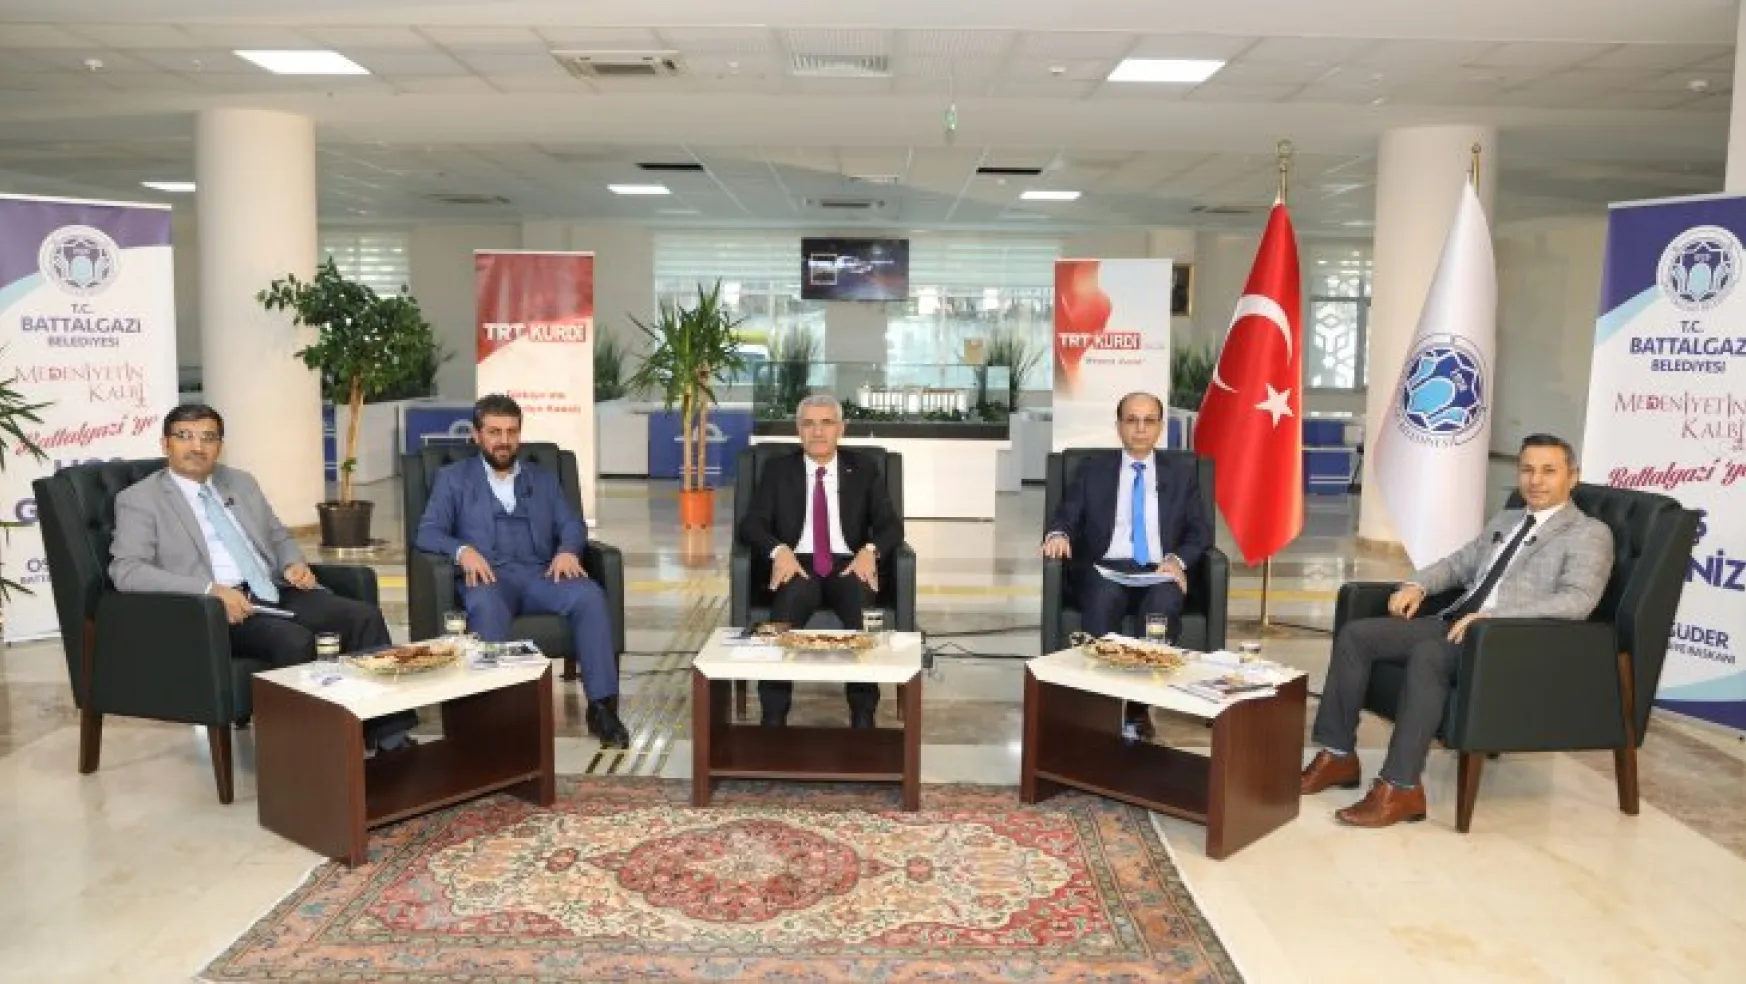 Battalgazi Belediye Başkanı Osman Güder, Trt Kurdi'ye Konuk Oldu